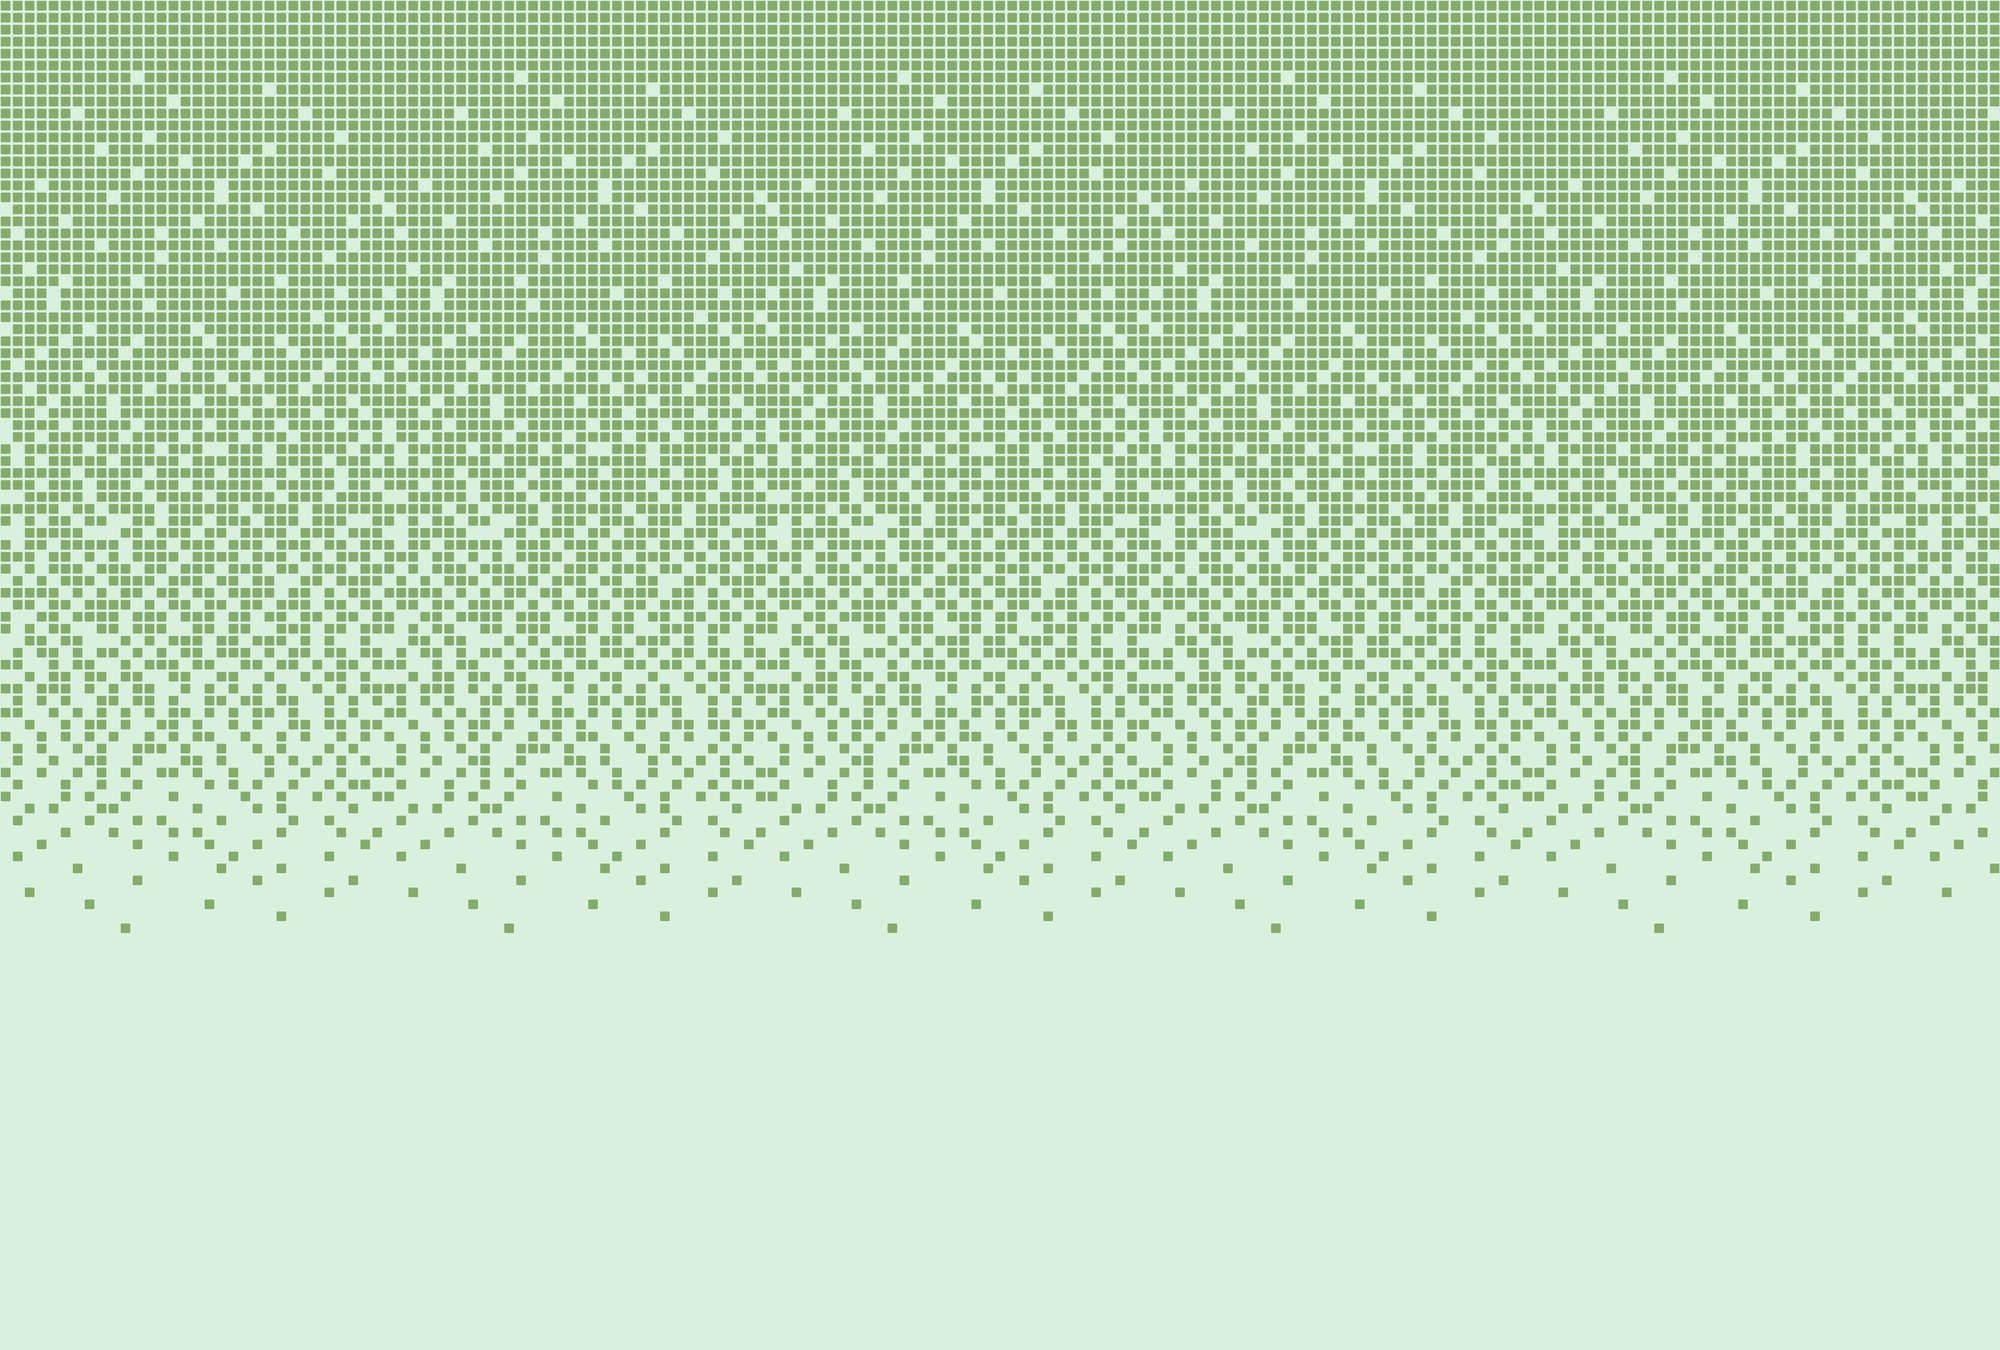             papier peint en papier panoramique »pixi mint« - motif mosaïque style pixel - vert | Intissé lisse, légèrement nacré
        